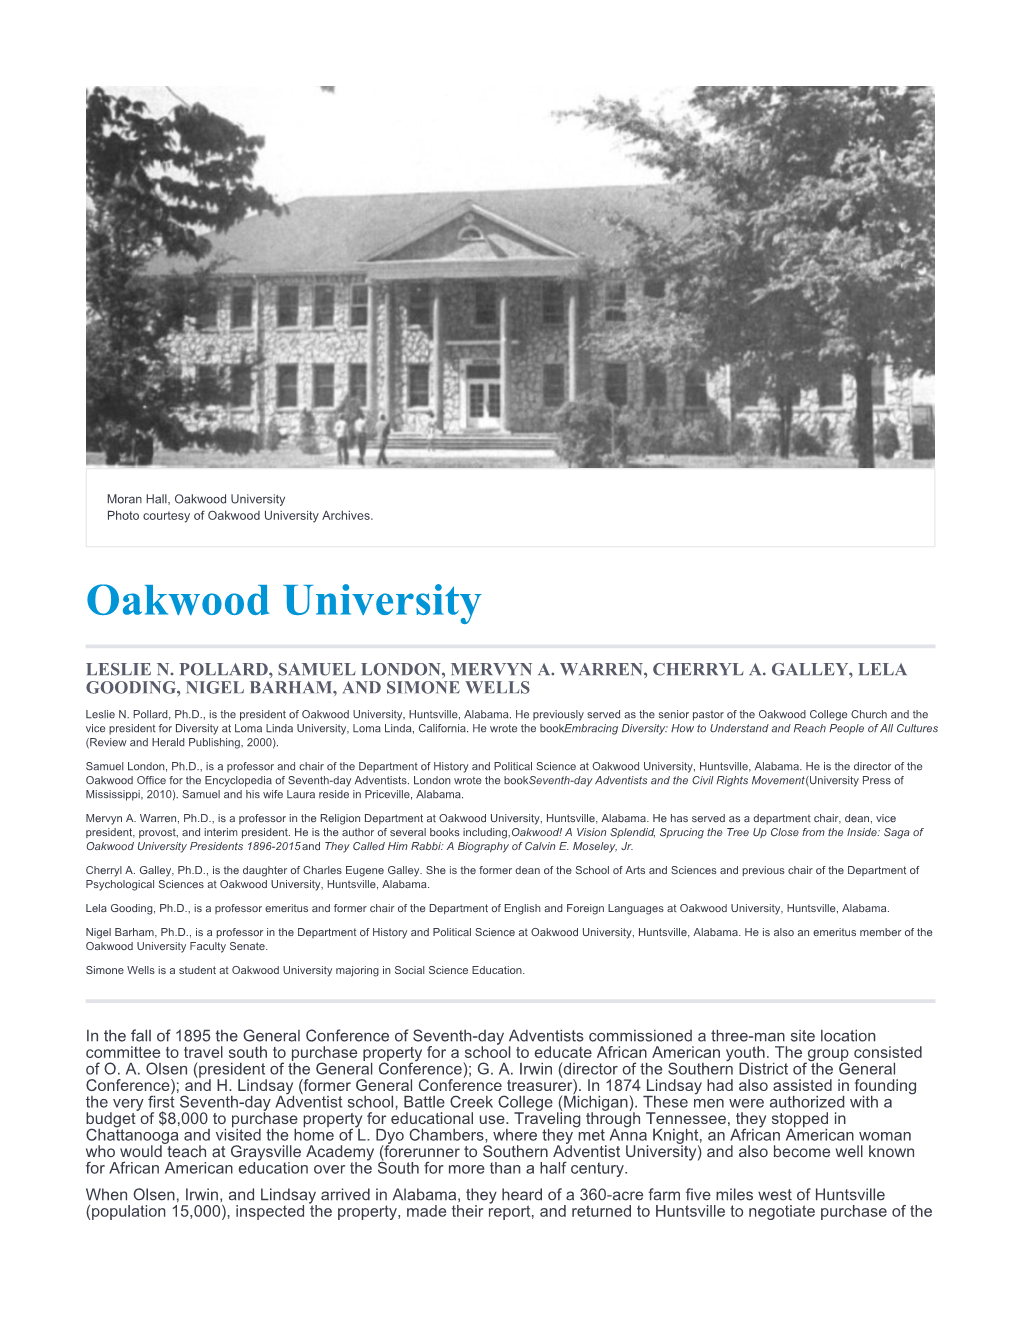 Oakwood University Photo Courtesy of Oakwood University Archives